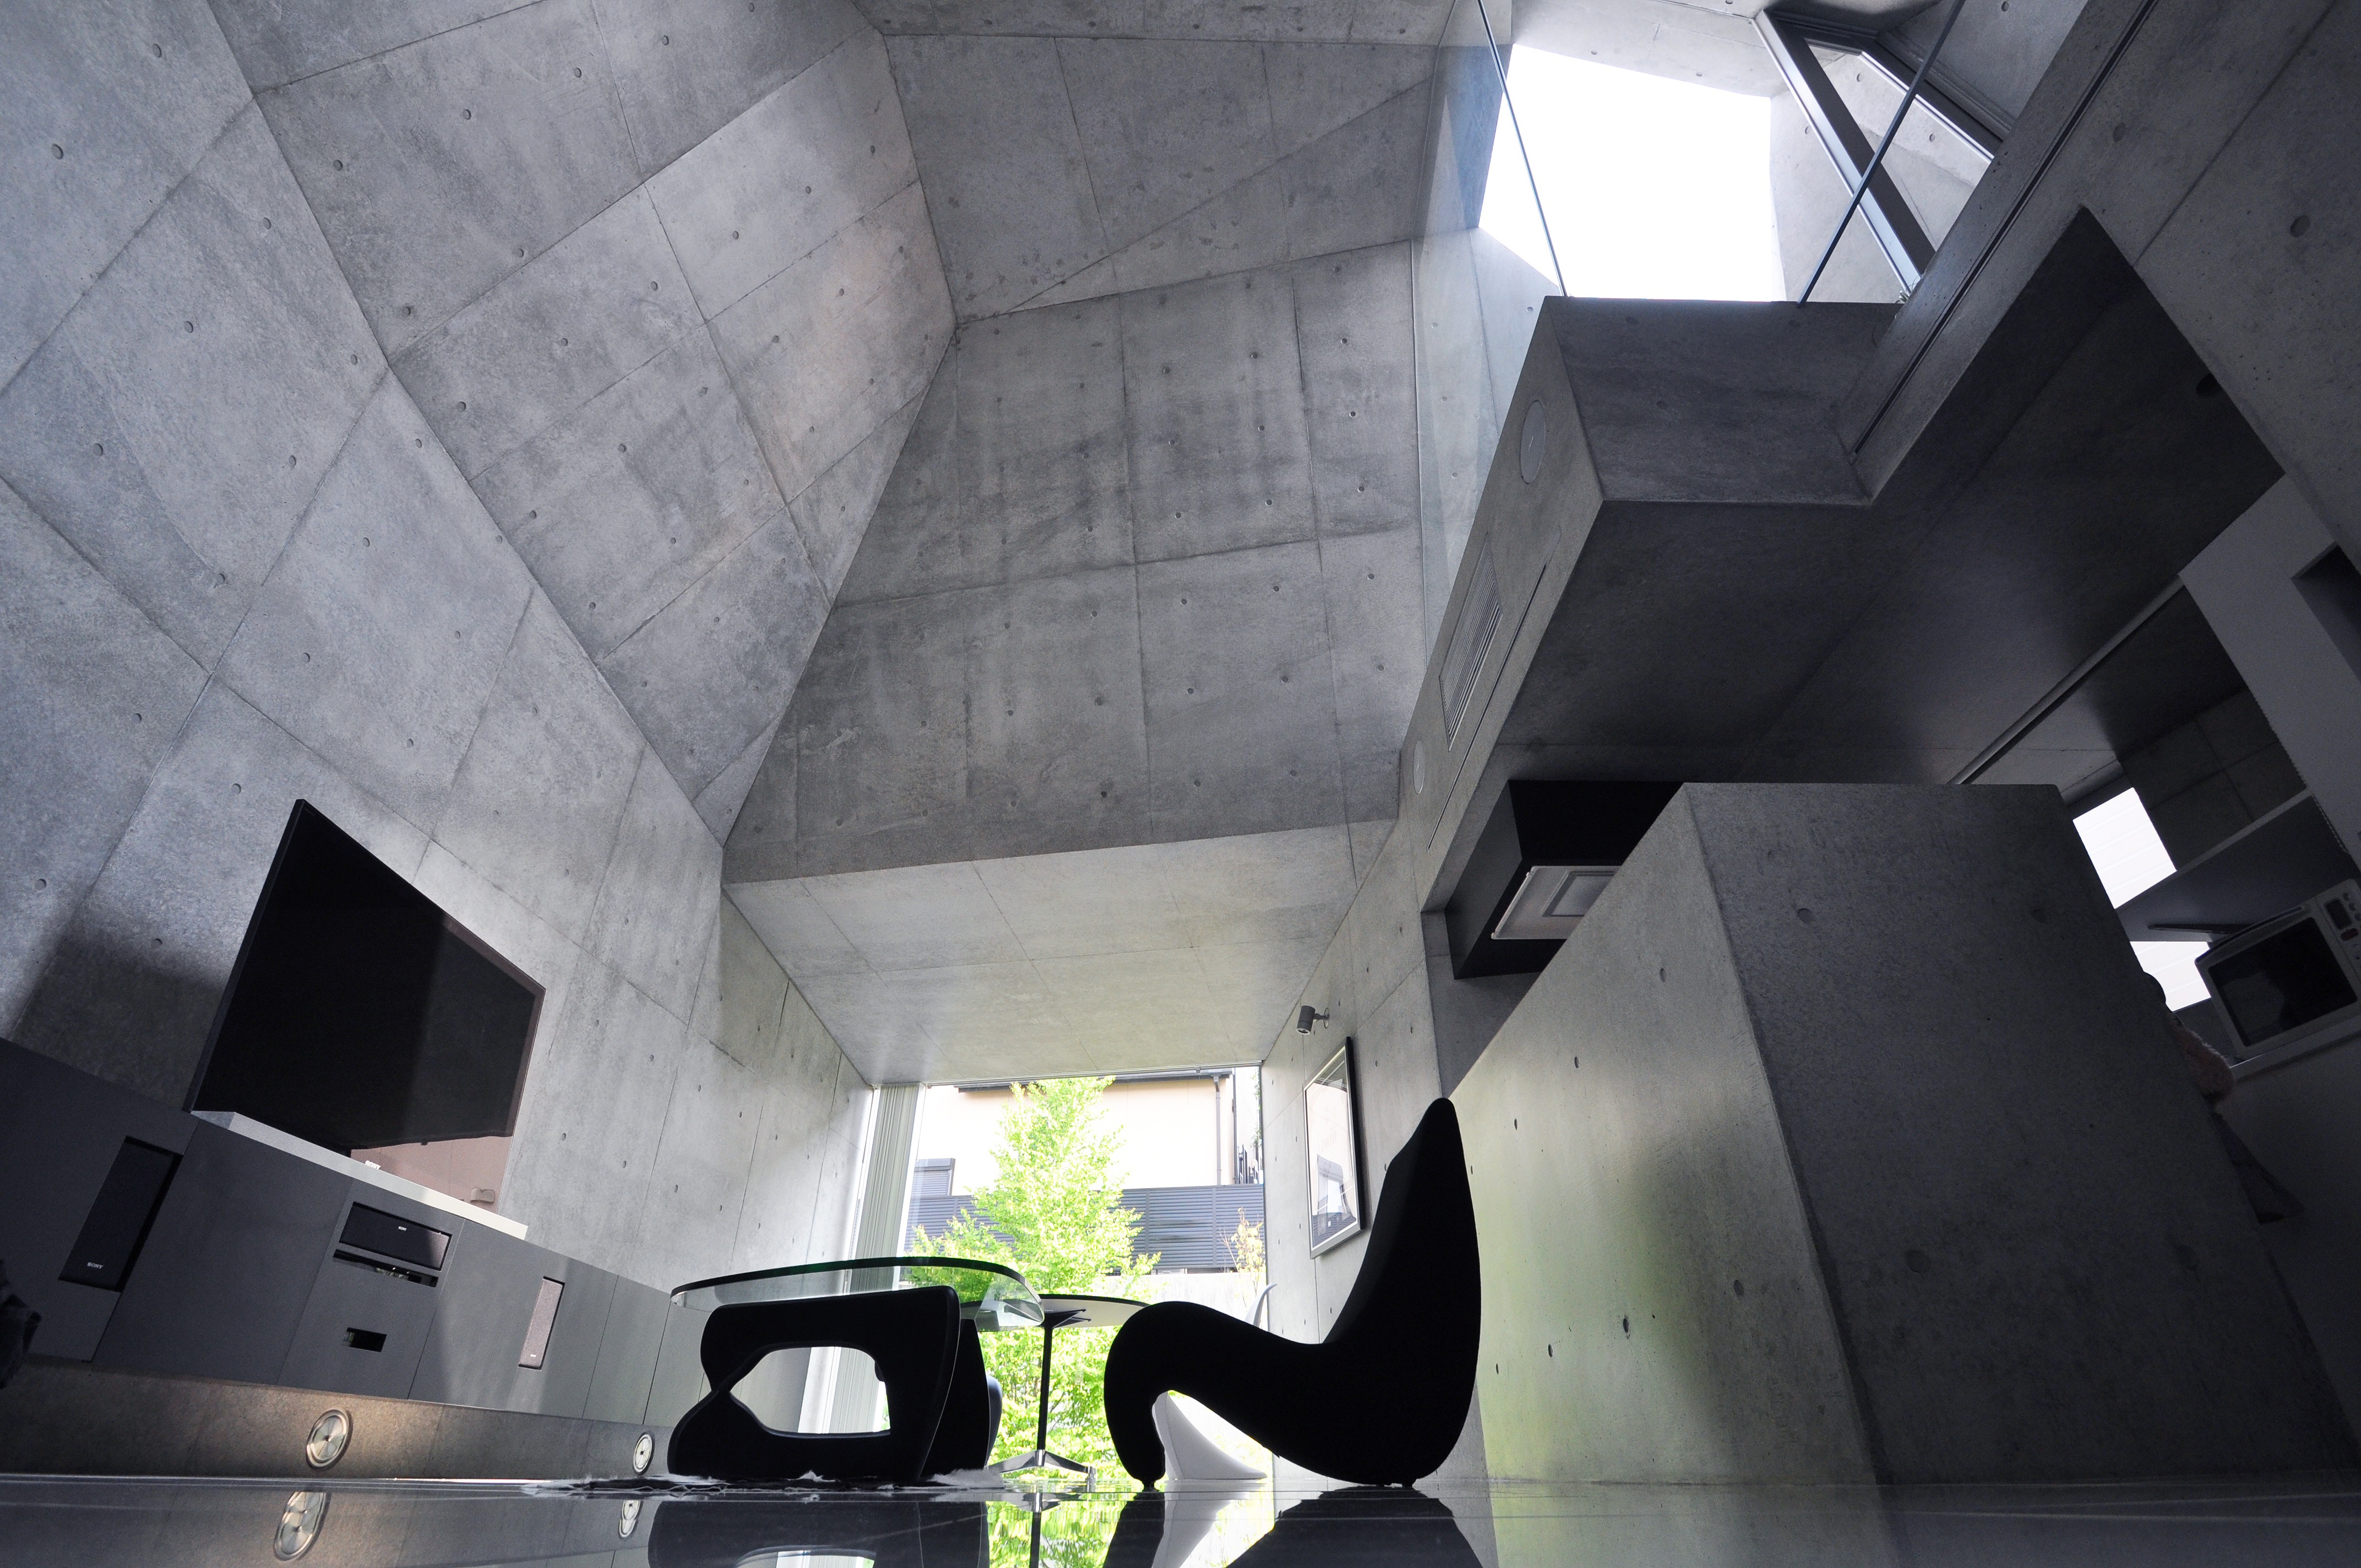 Make concrete. Частный дом, Абико, Япония. Архитектурный бетон. Архитектурный бетон в интерьере. Бетонный дом в стиле хайтек.